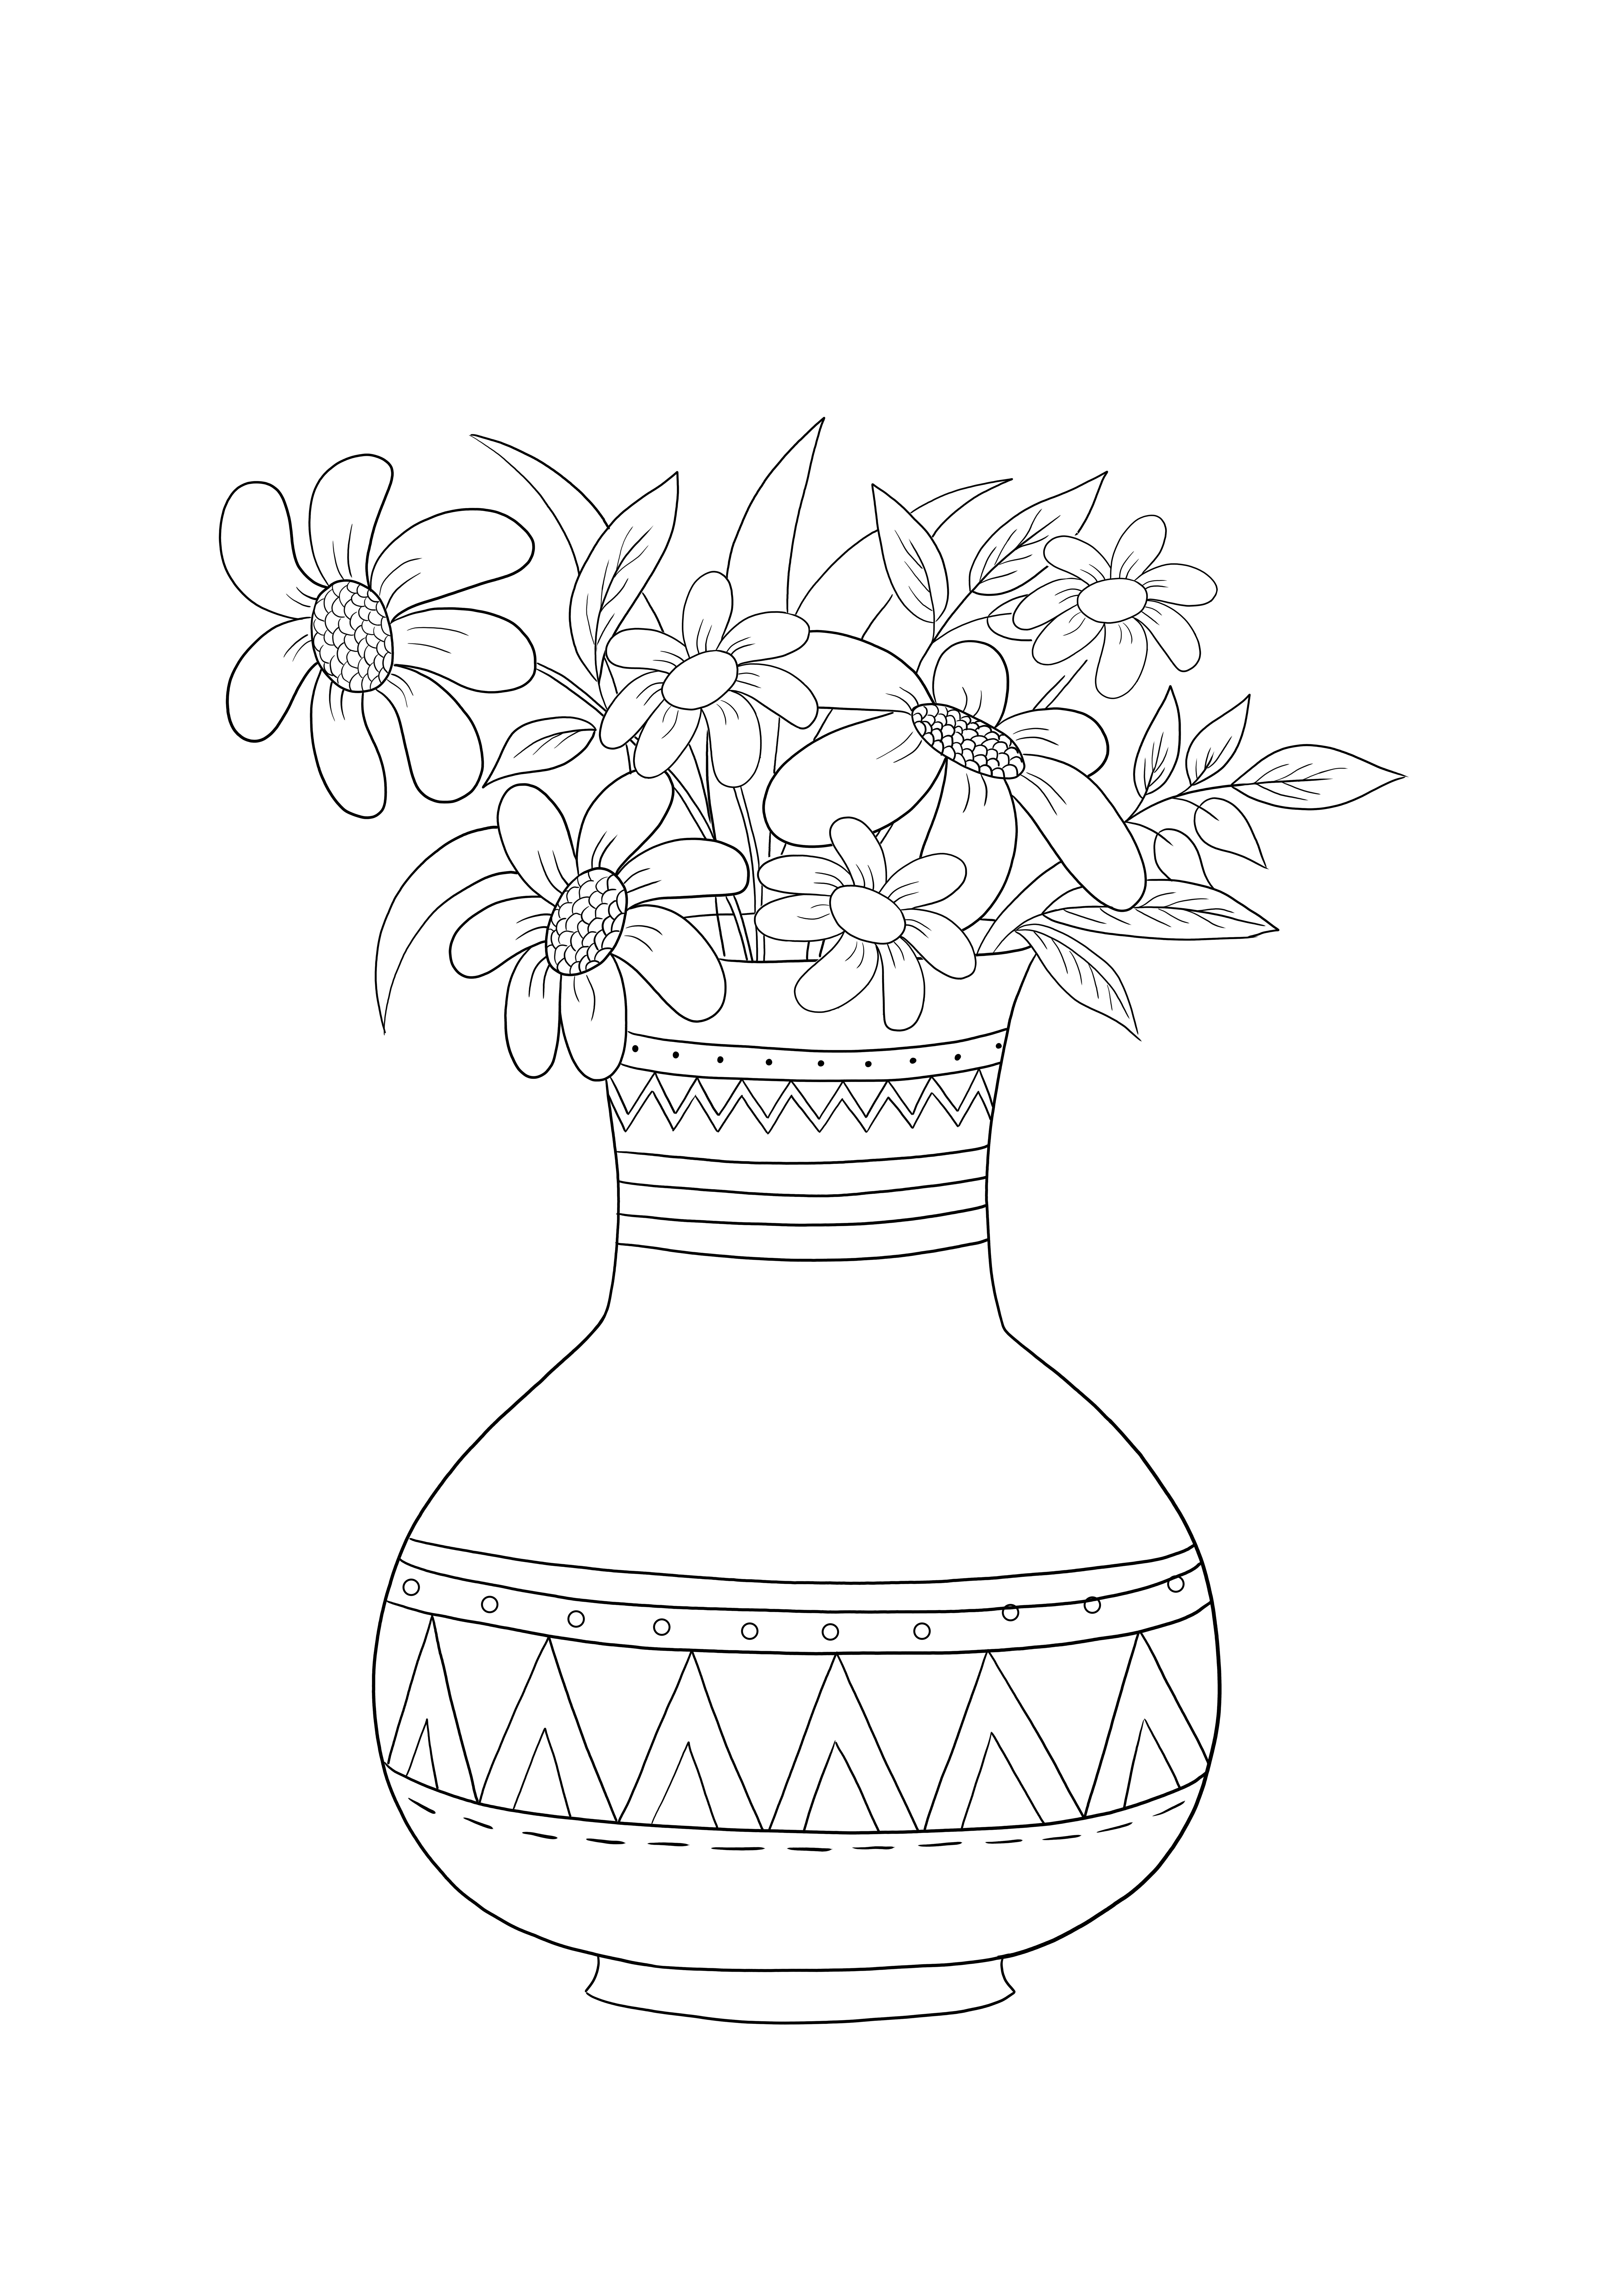 Vas bunga aster yang indah untuk dicetak secara gratis dan gambar berwarna